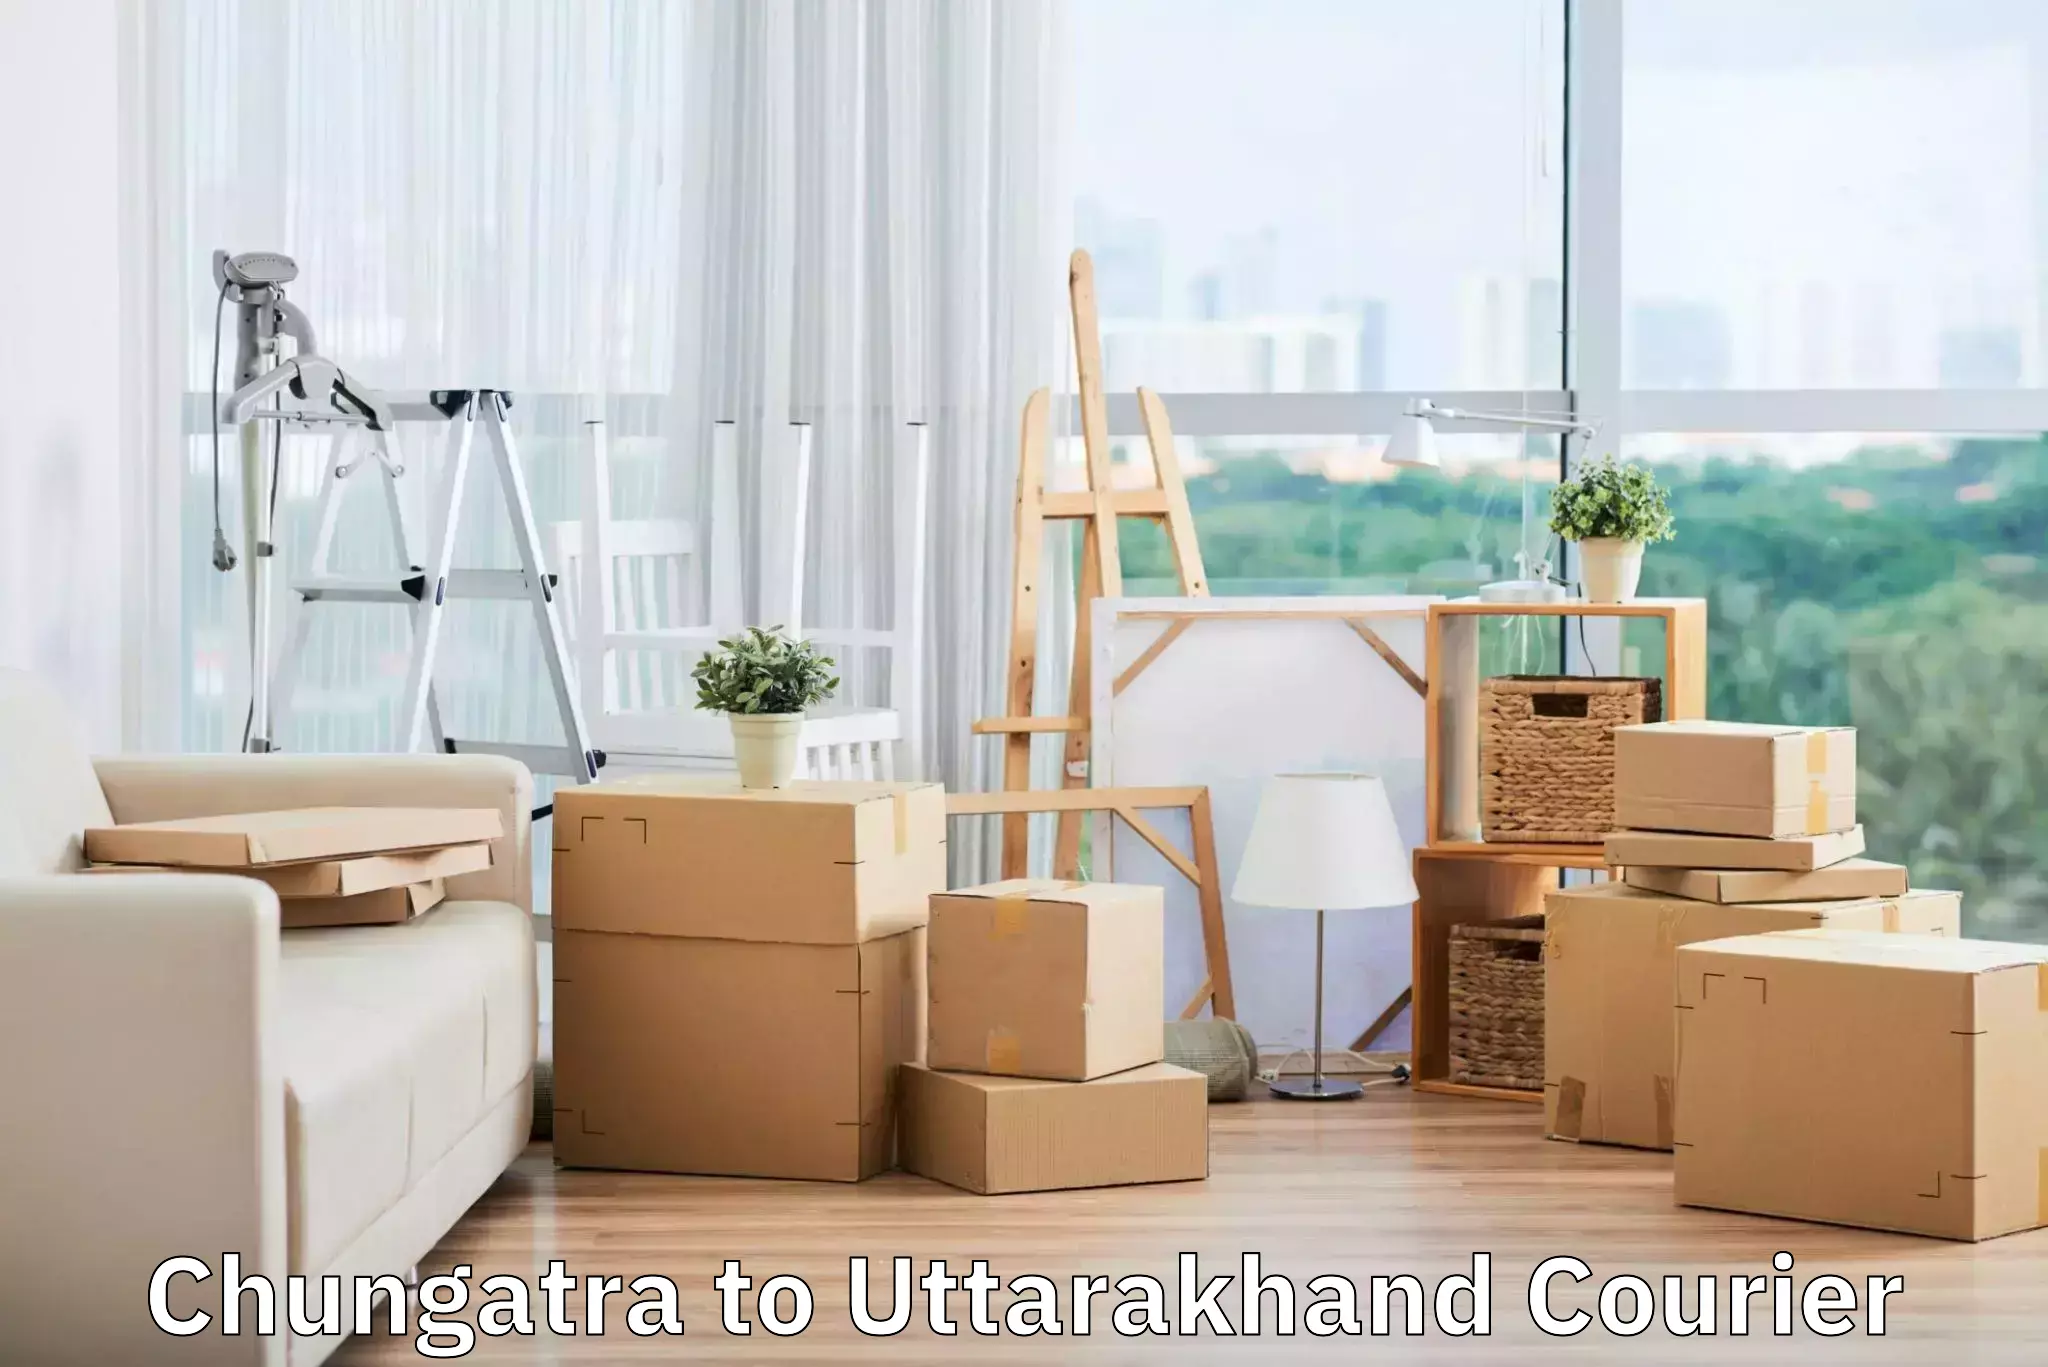 Luggage delivery providers Chungatra to Uttarkashi